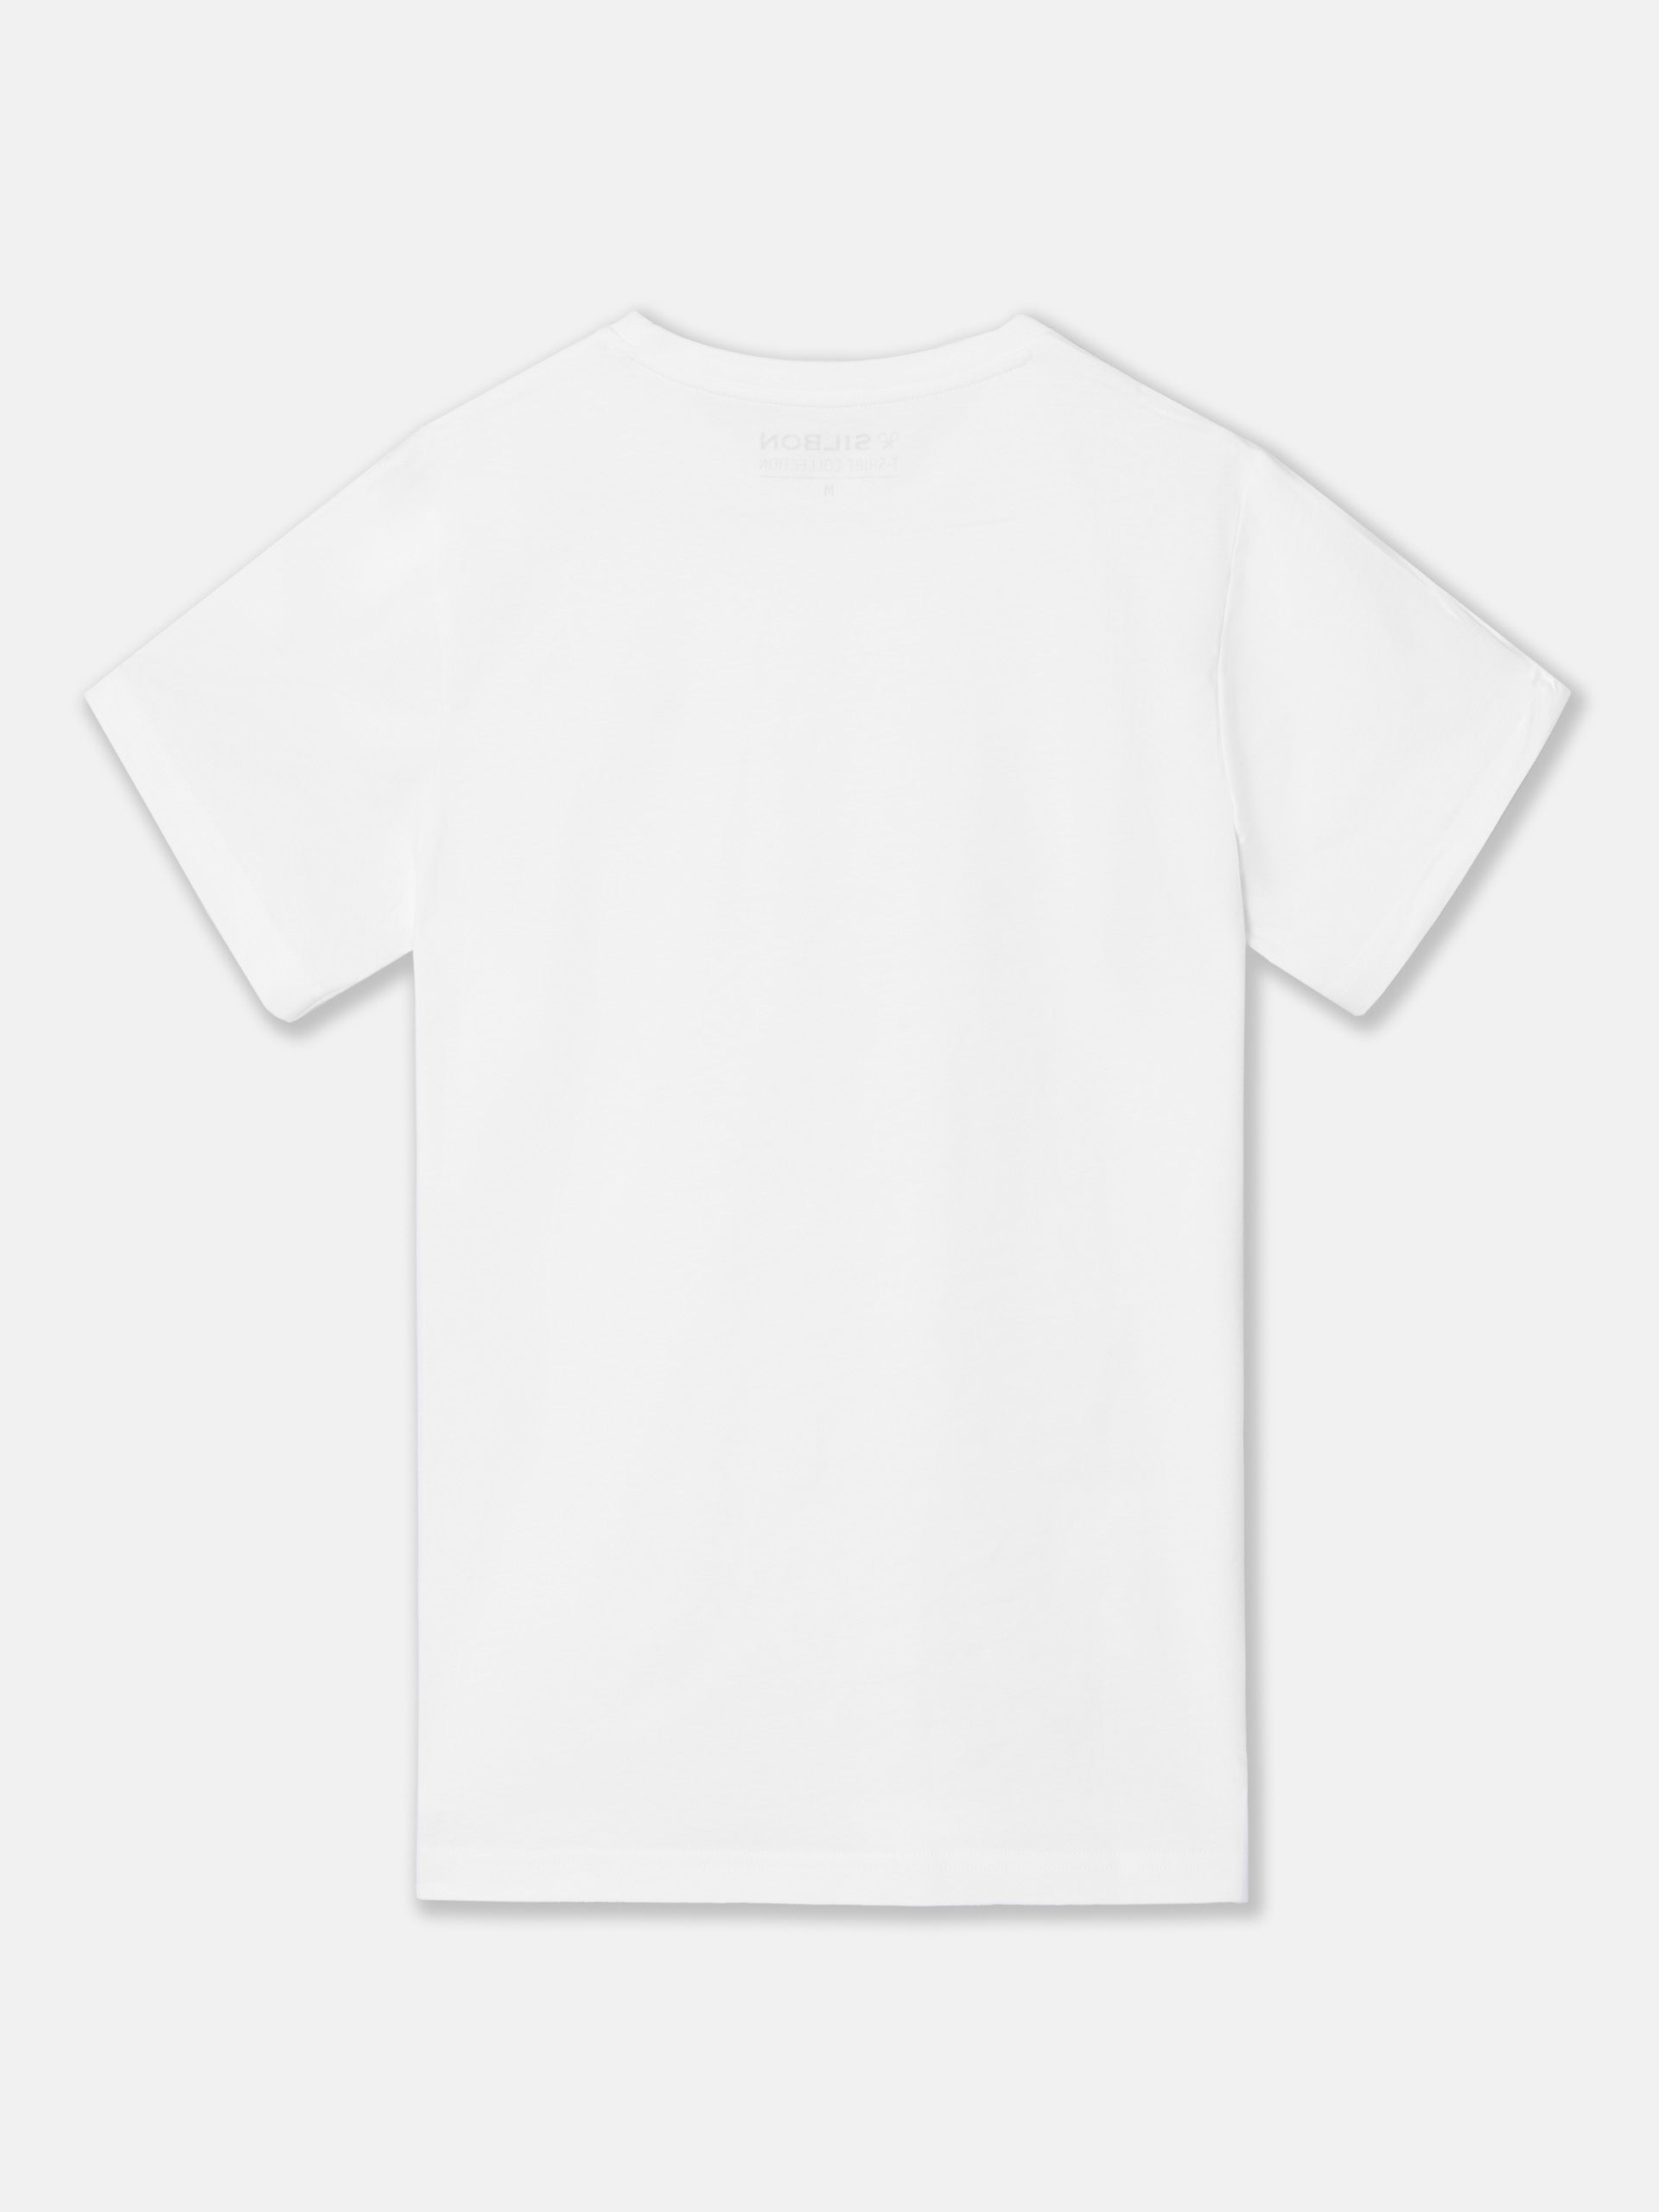 T-shirt blanc mini logo silbon